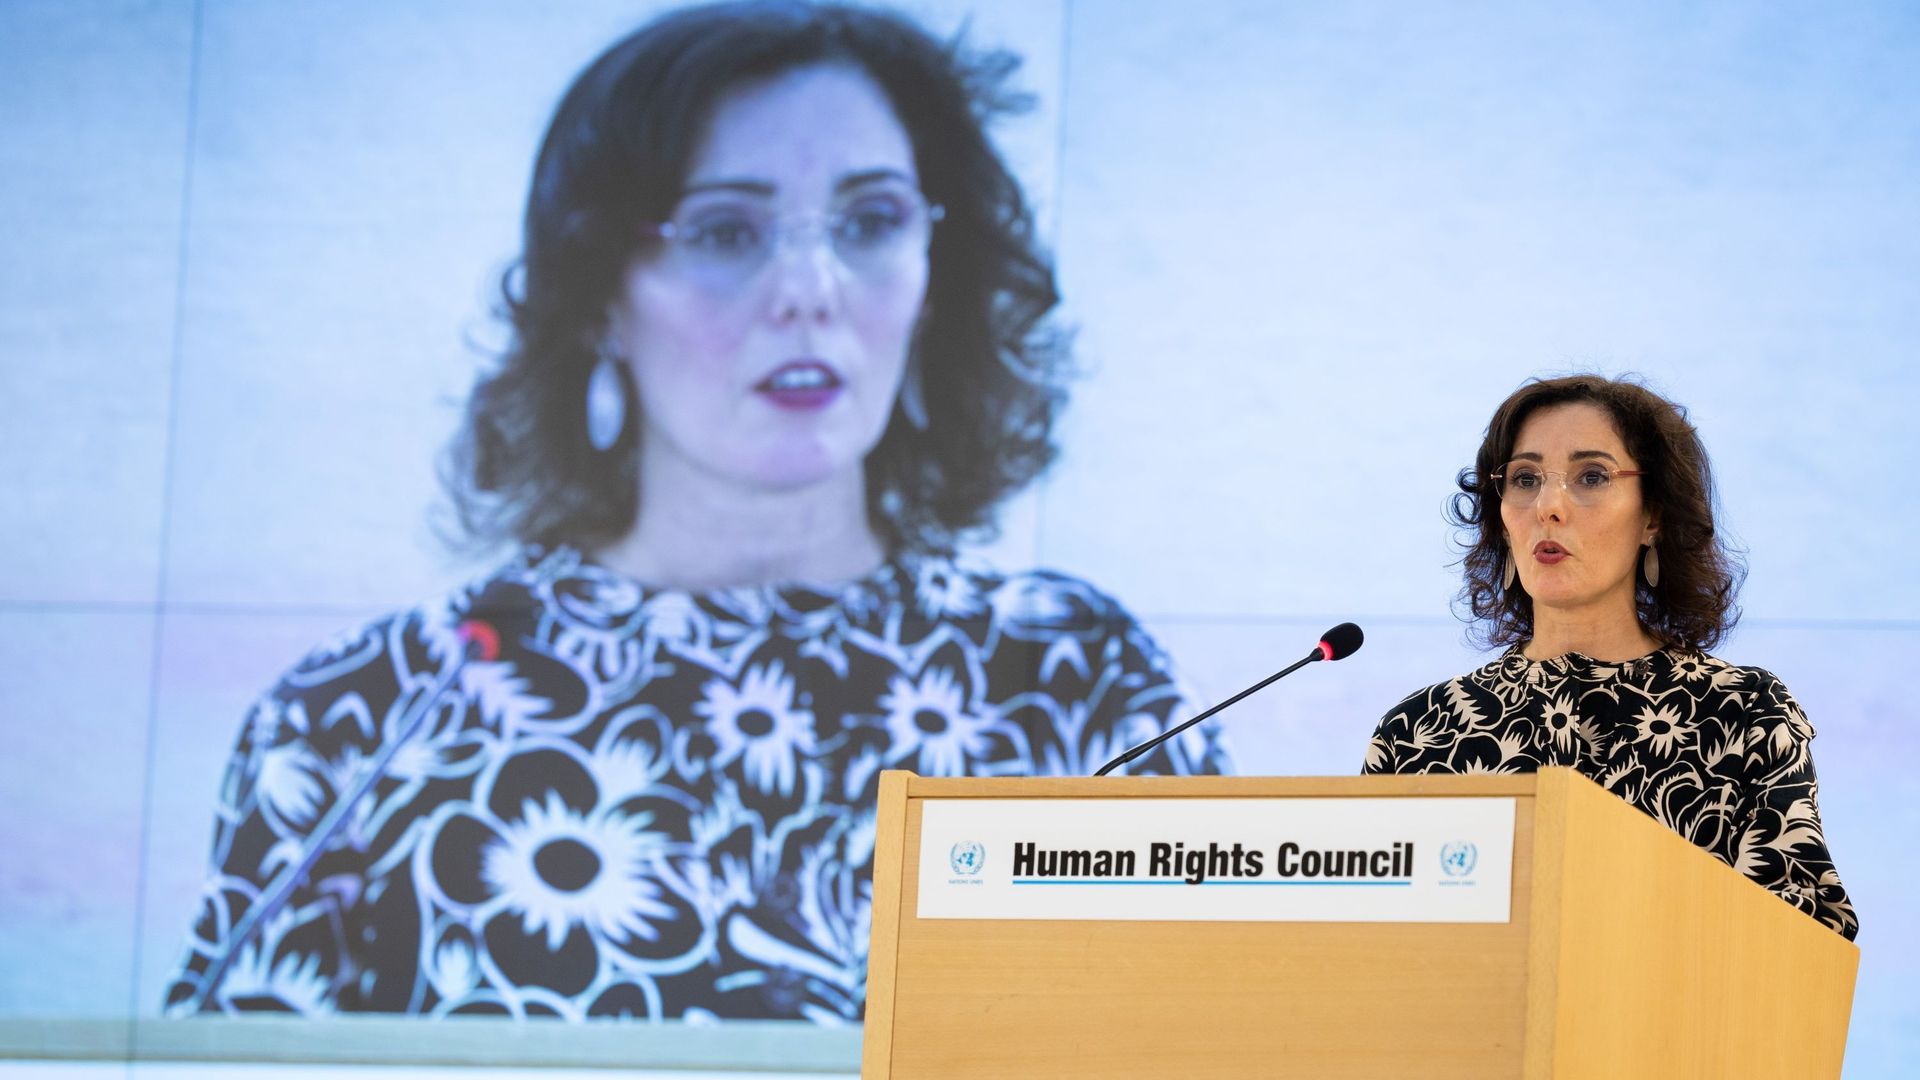 La ministre des Affaires étrangères Hadja Lahbib prononce un discours lors de la séance d’ouverture de la 52e session du Conseil des droits de l’homme des Nations Unies, à Genève, en Suisse, lundi 27 février 2023.